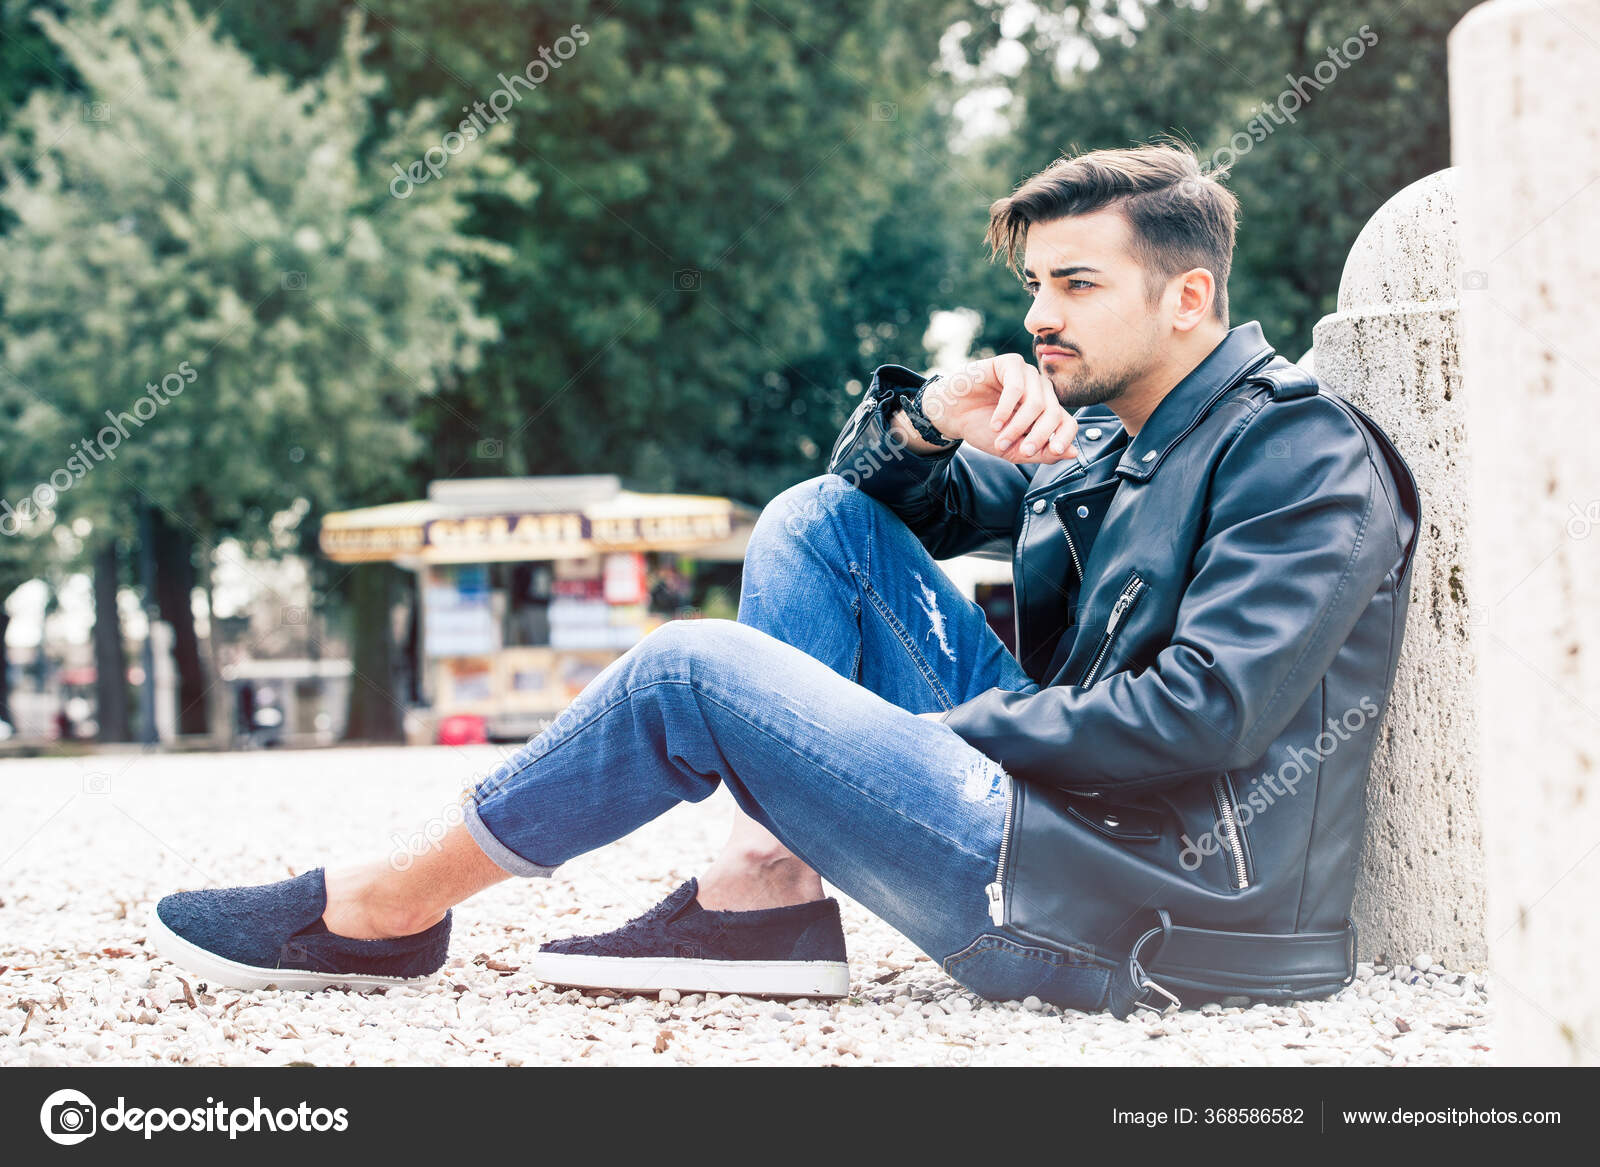 Bonito Jovem Lindo Sentado Livre Calça Jeans Jaqueta Couro Casuais fotos,  imagens de © angelocordeschi #368586582